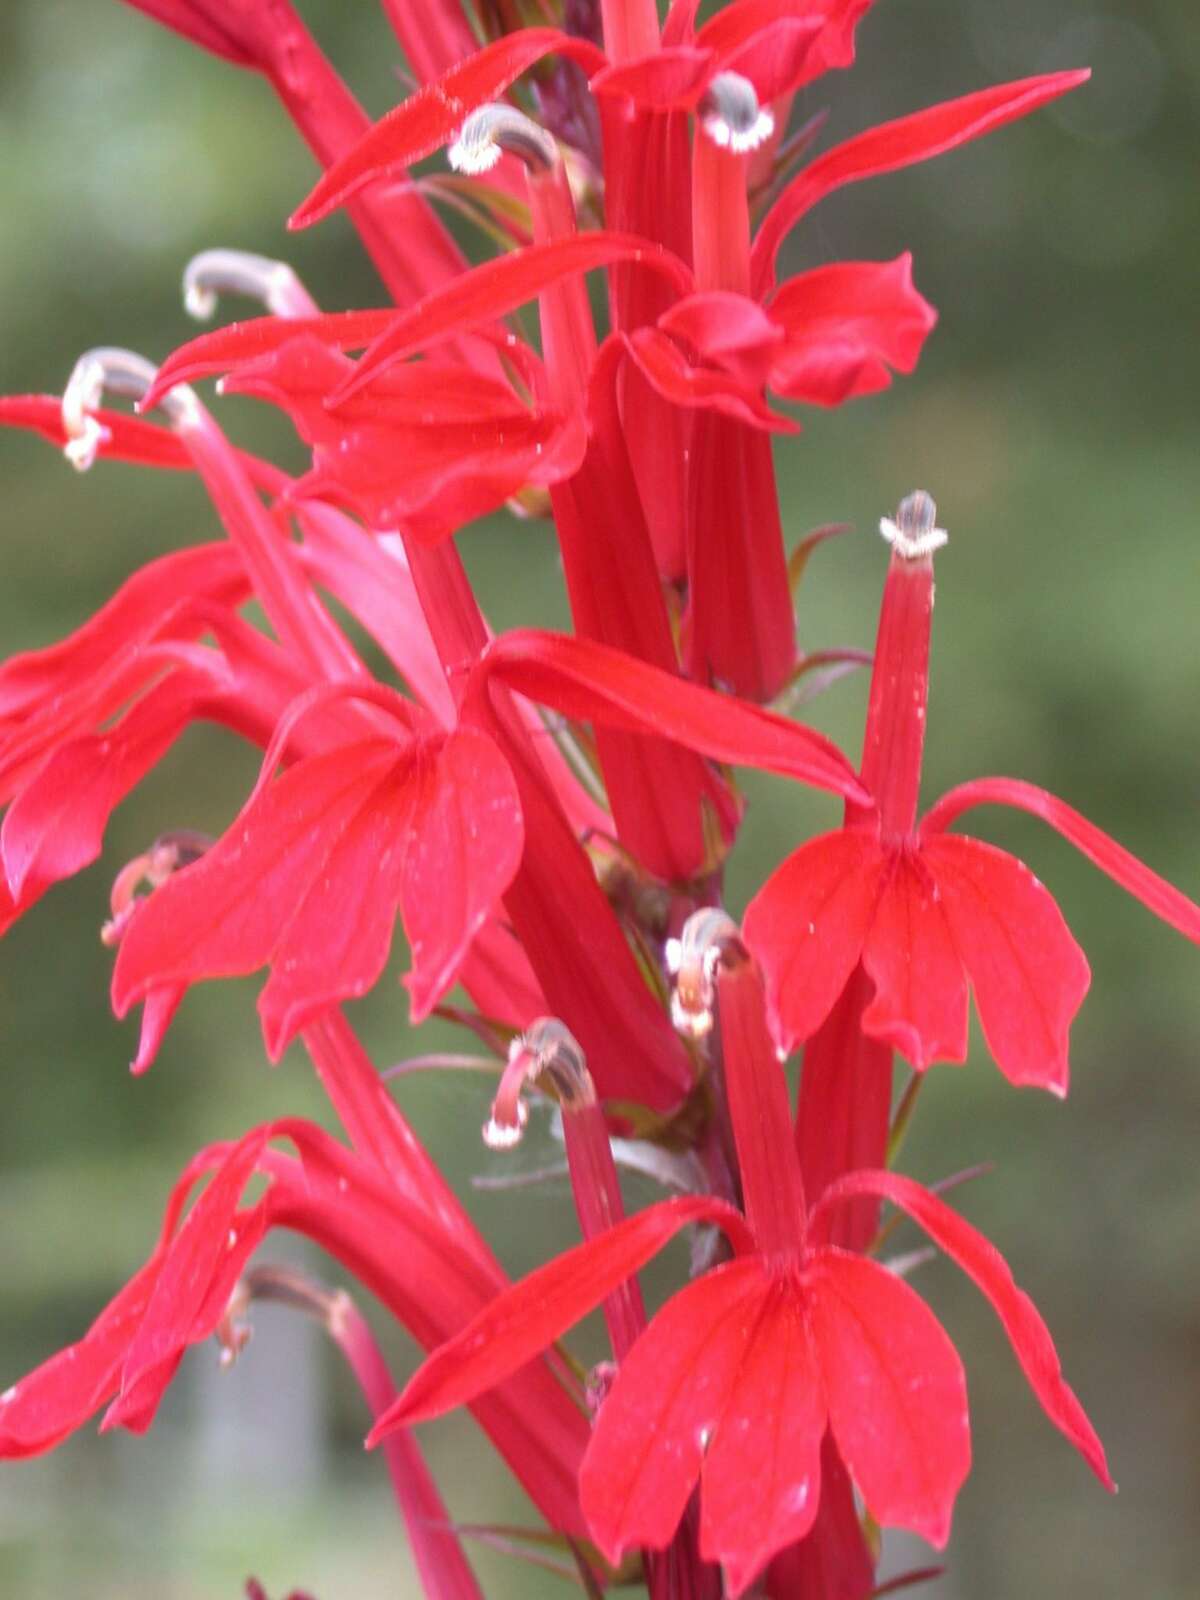 Lobelia cardinalis is konwn as the cardinal flower.